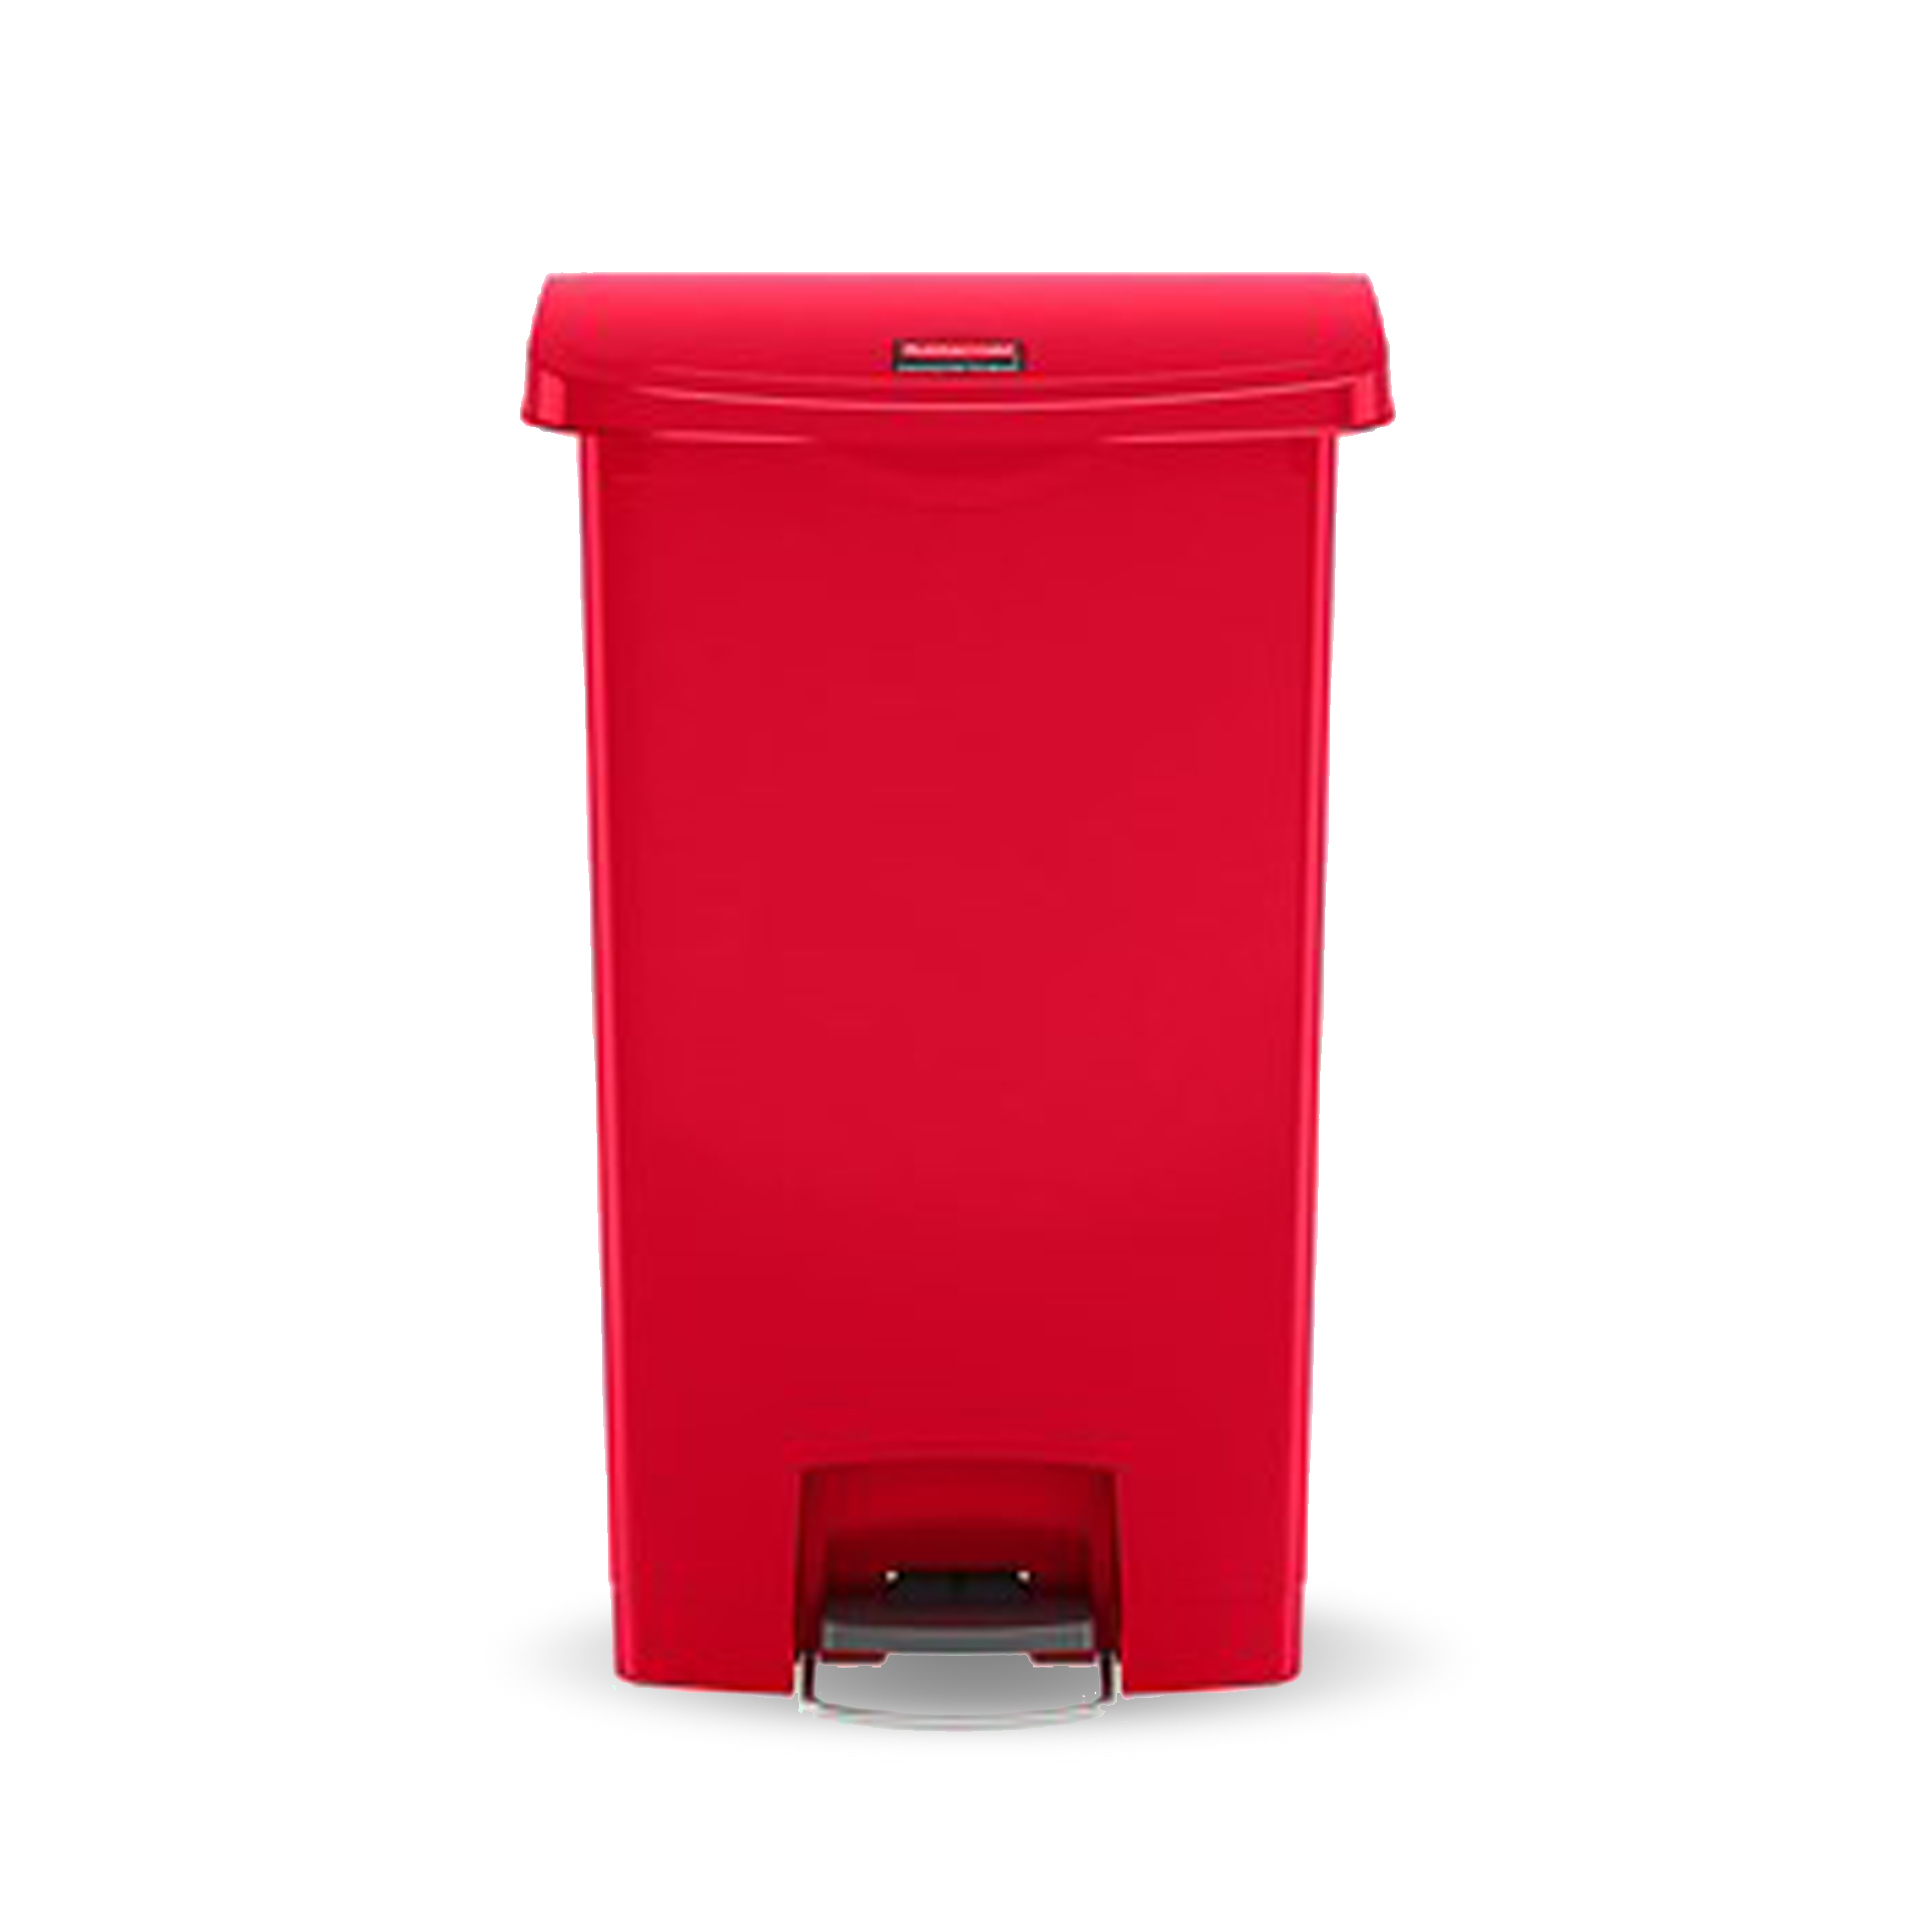 ถังขยะแบบเท้าเหยียบ Slim Jim® Step-On Container ขนาด 90 ลิตร สีแดง